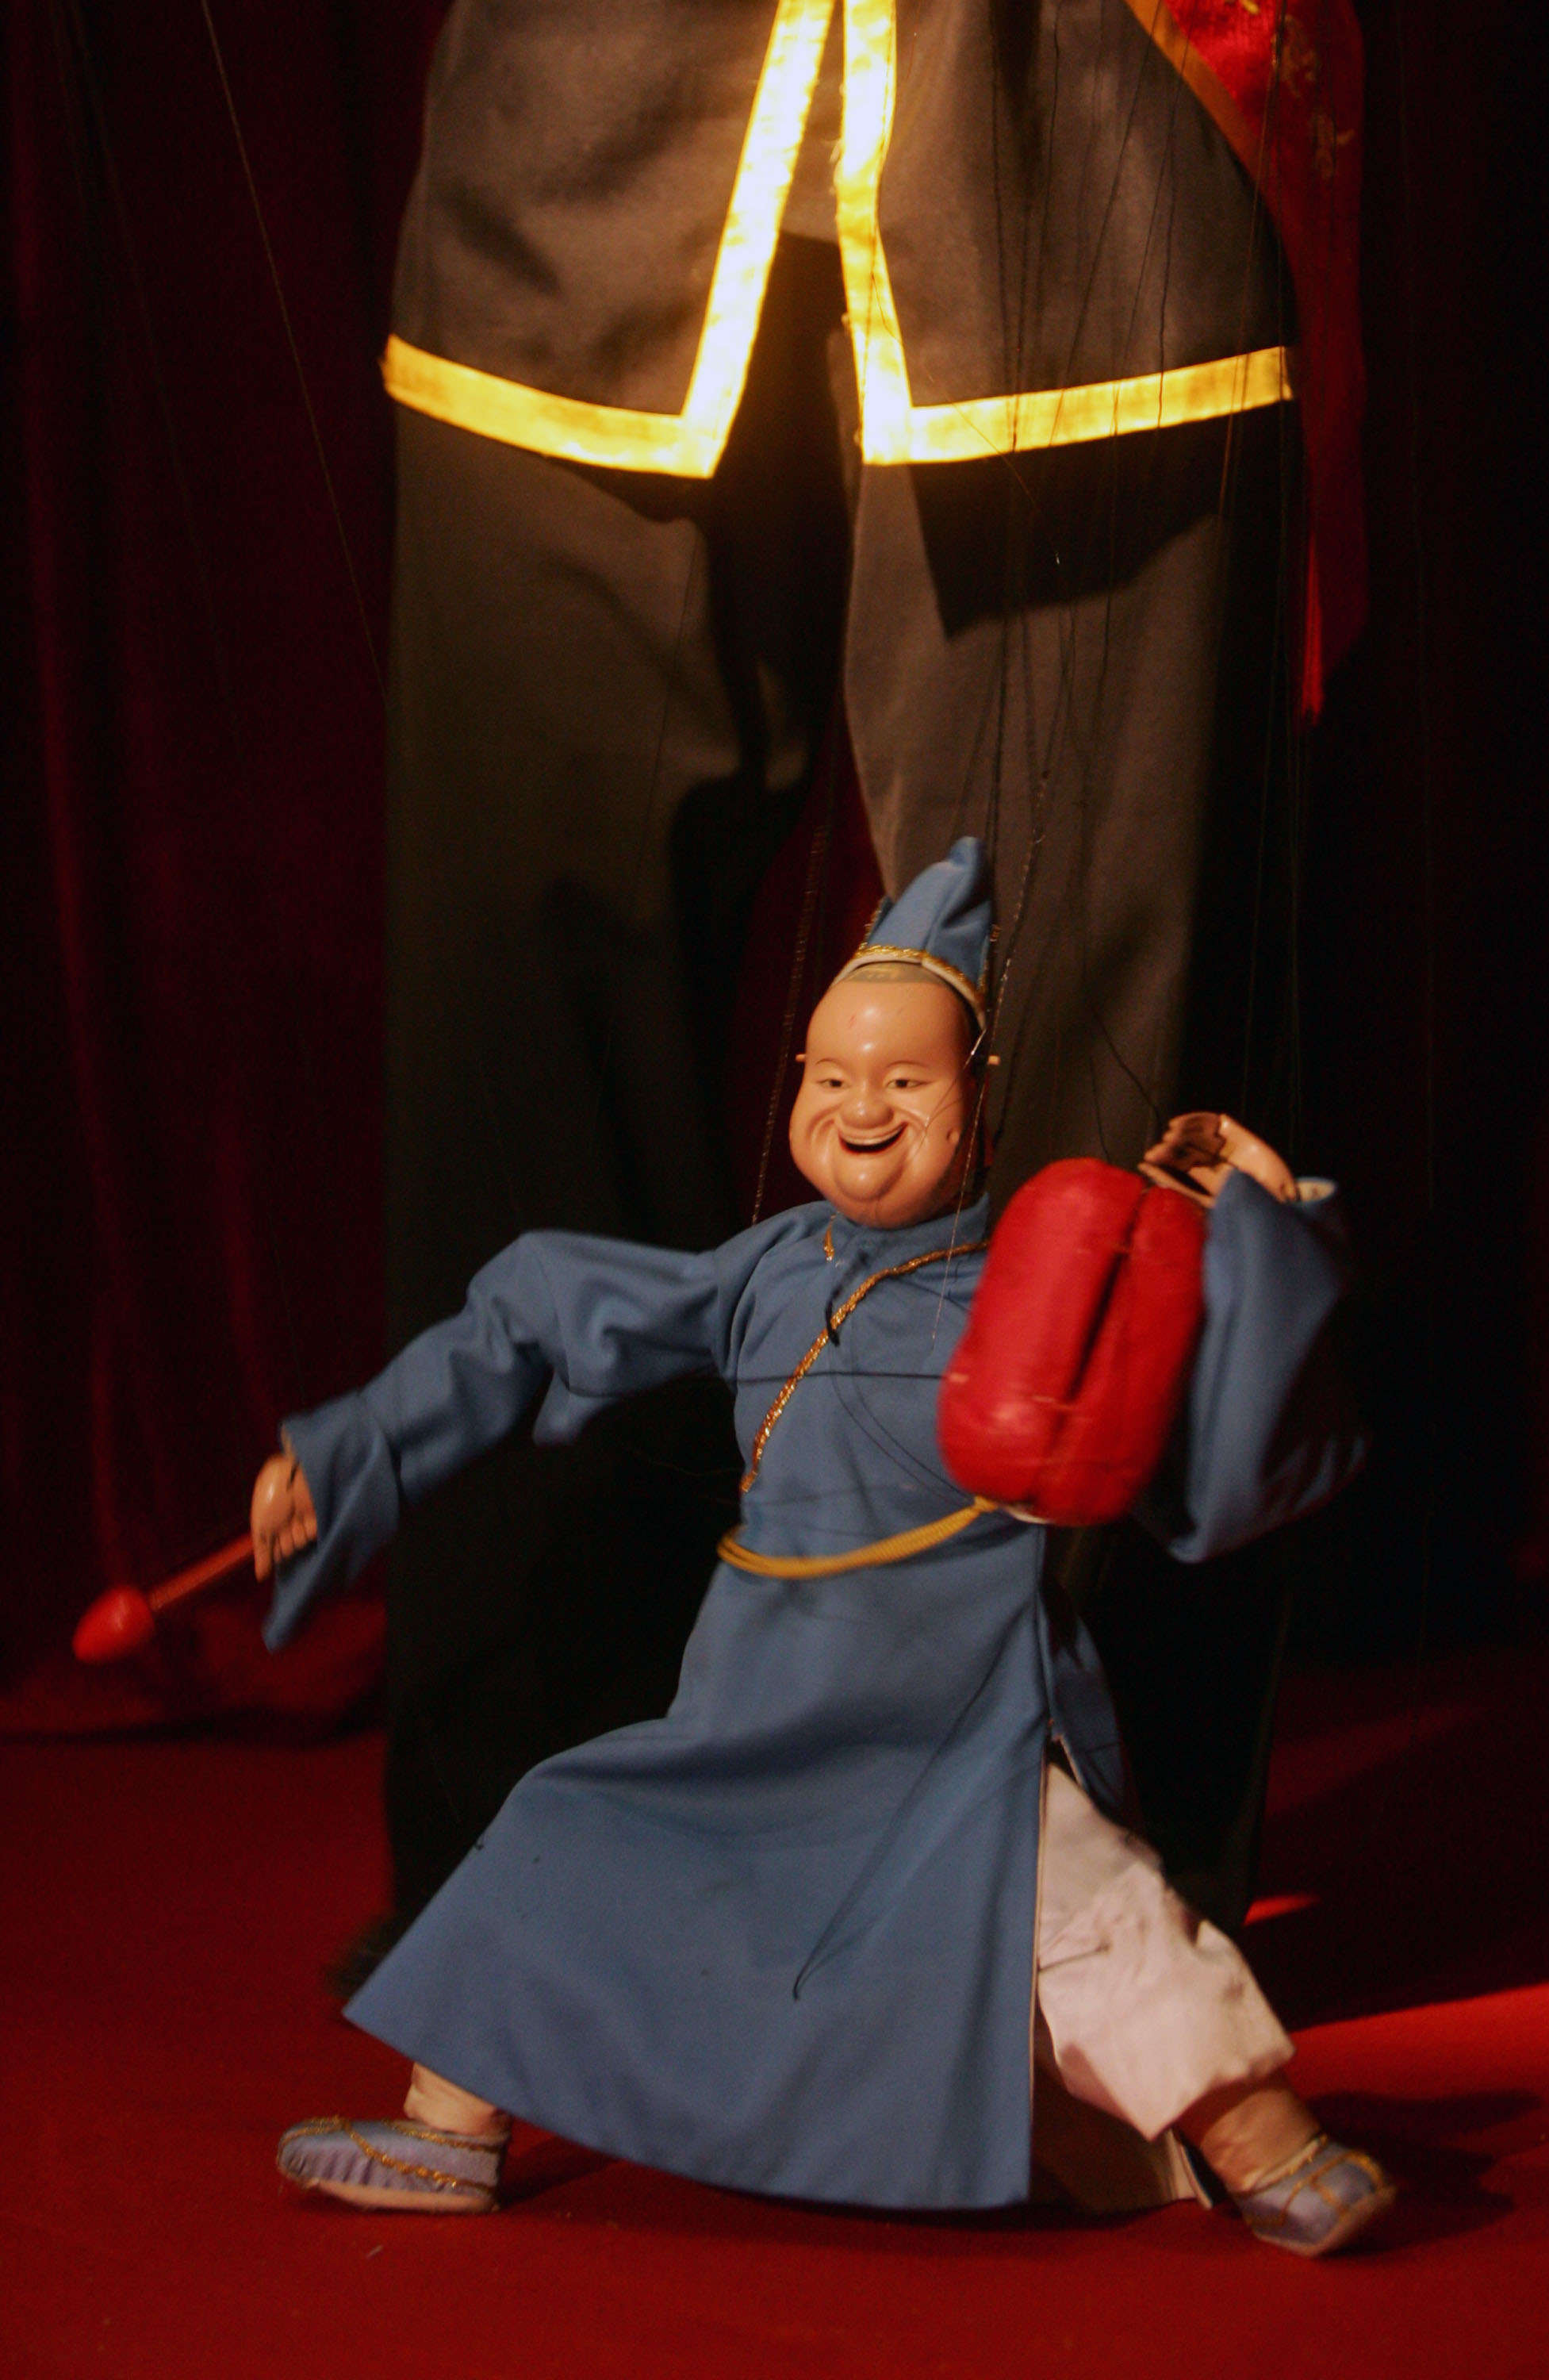 现代常见的「傀儡」就是指木偶剧中的提线木偶，木偶的身上各个关节连了很多线，由人来控制它做各种各样的动作。并由人配音来表达剧情。